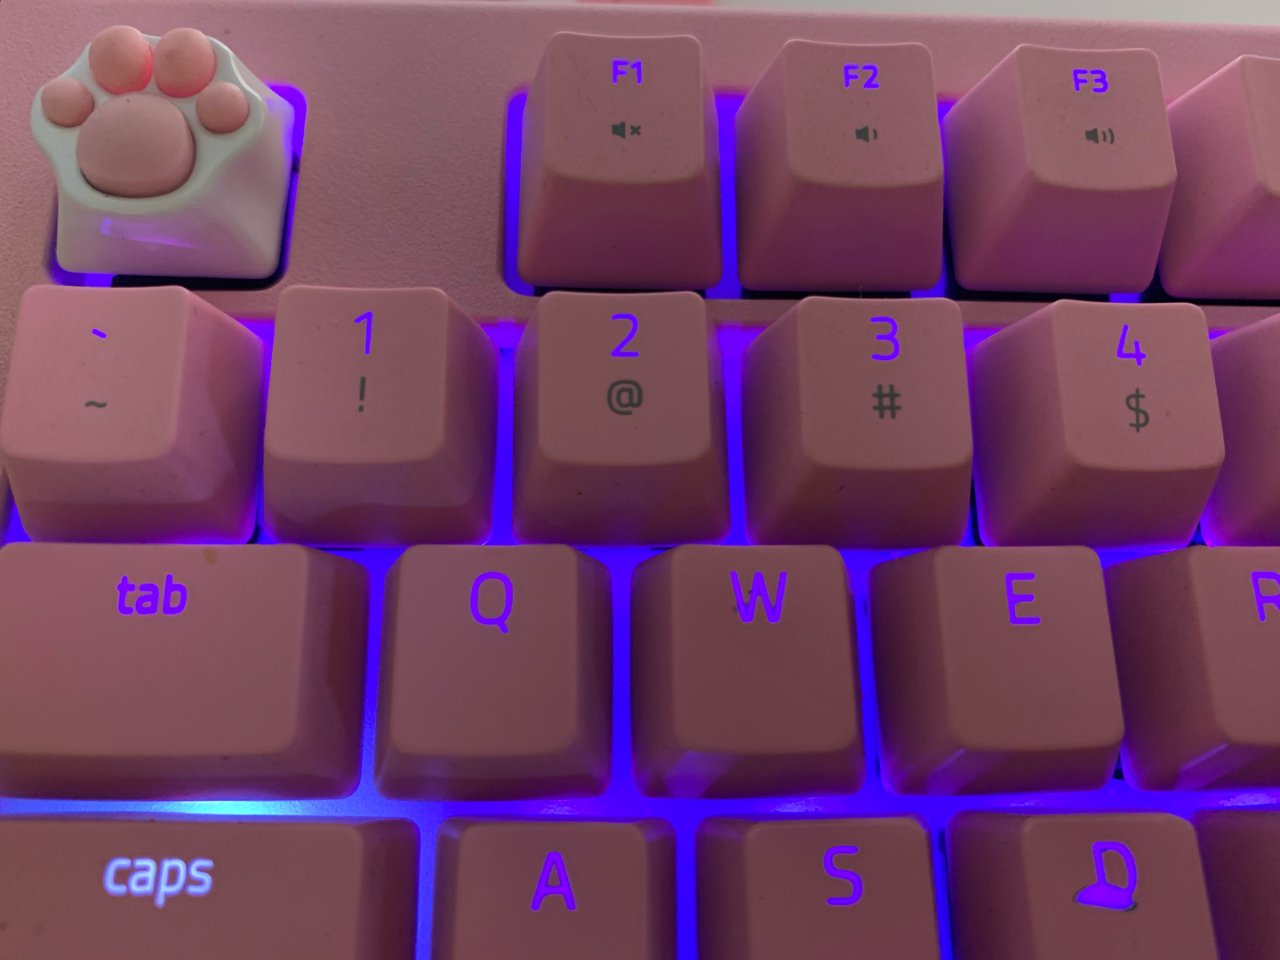 机械键盘,Razer 雷蛇,键帽,粉色,樱花元素,猫咪